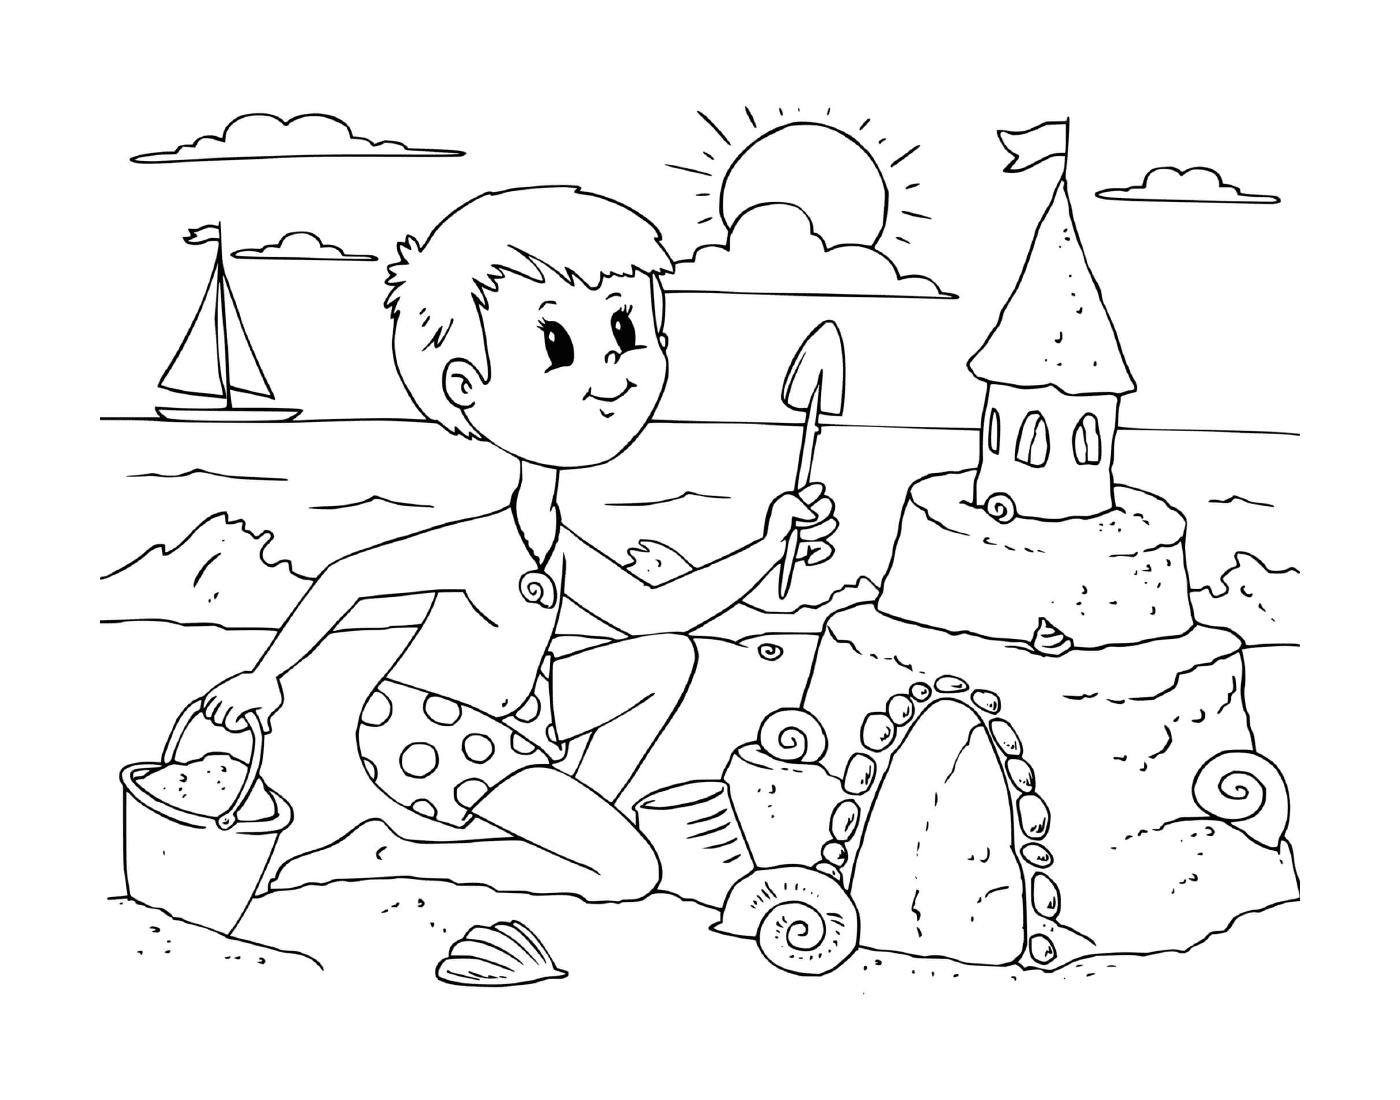   Un garçon construit un château de sable sur la plage 